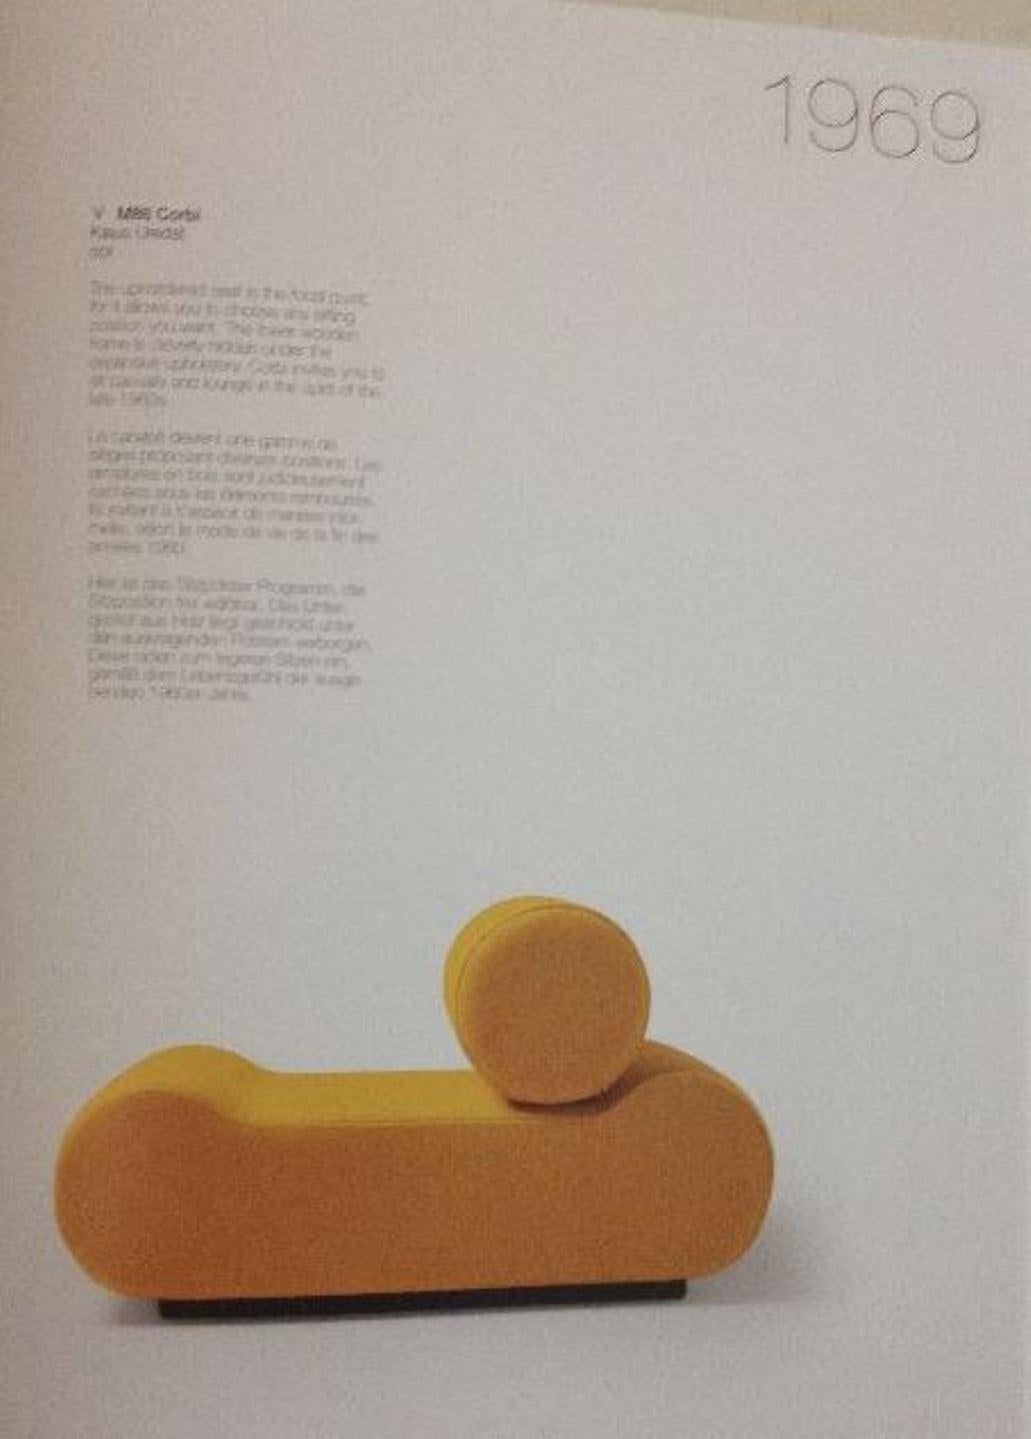 Erstaunliche, modulare Sitzgarnitur 'CORBI' in Museumsqualität, bestehend aus vier Elementen, entworfen von Klaus Uredat für 'COR', Deutschland, 1969, komplett mit der Original-Kaufrechnung von 1972.

Auf vielfachen Wunsch haben wir die